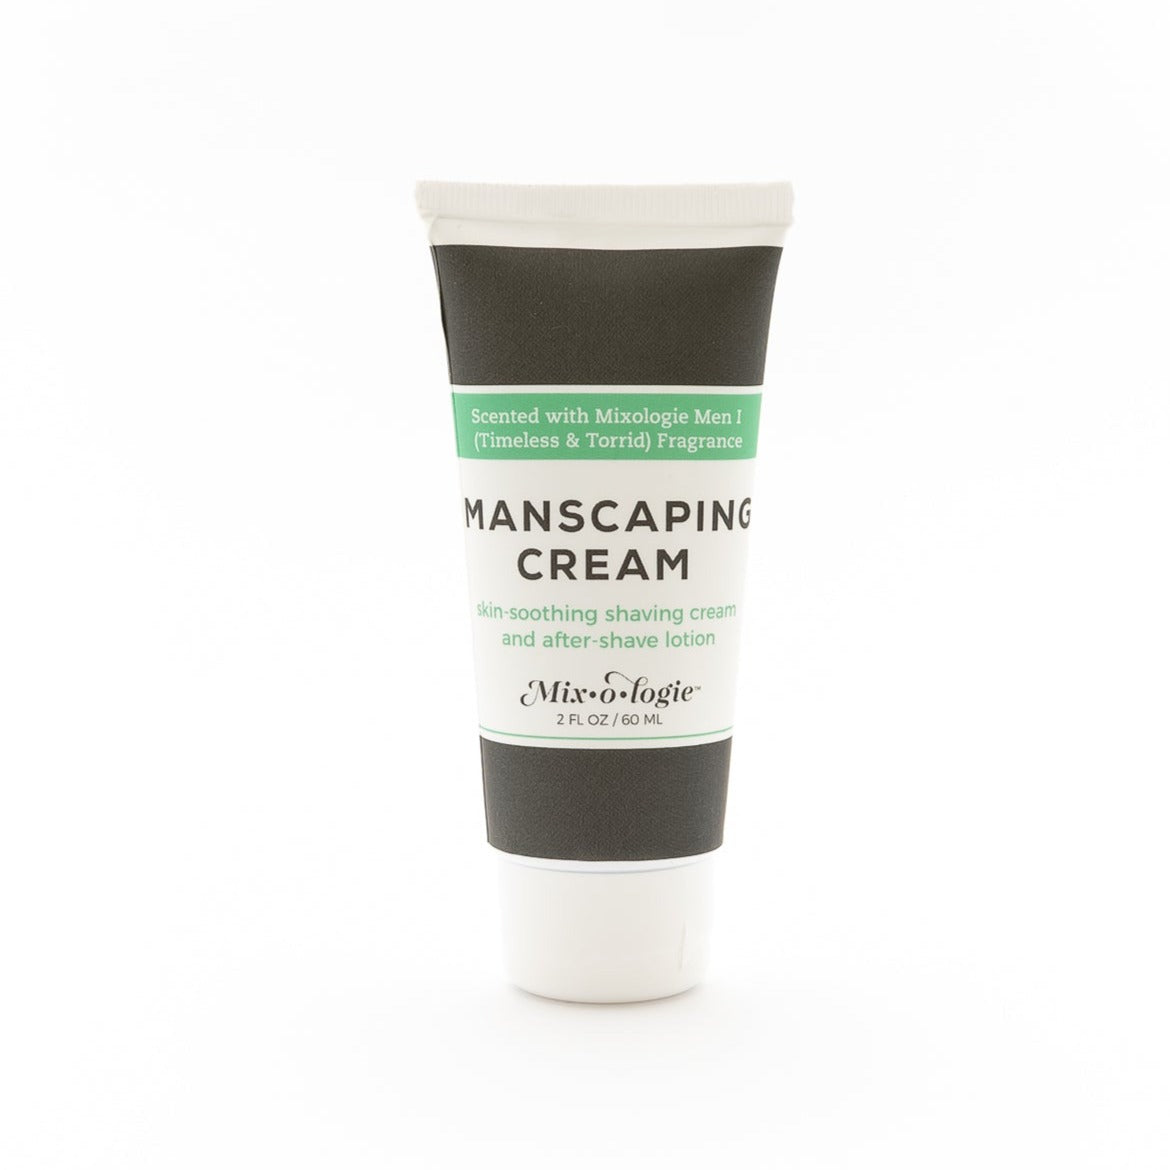 Manscaping Cream Shaving Lotion - Scent I (Timeless & Torrid)